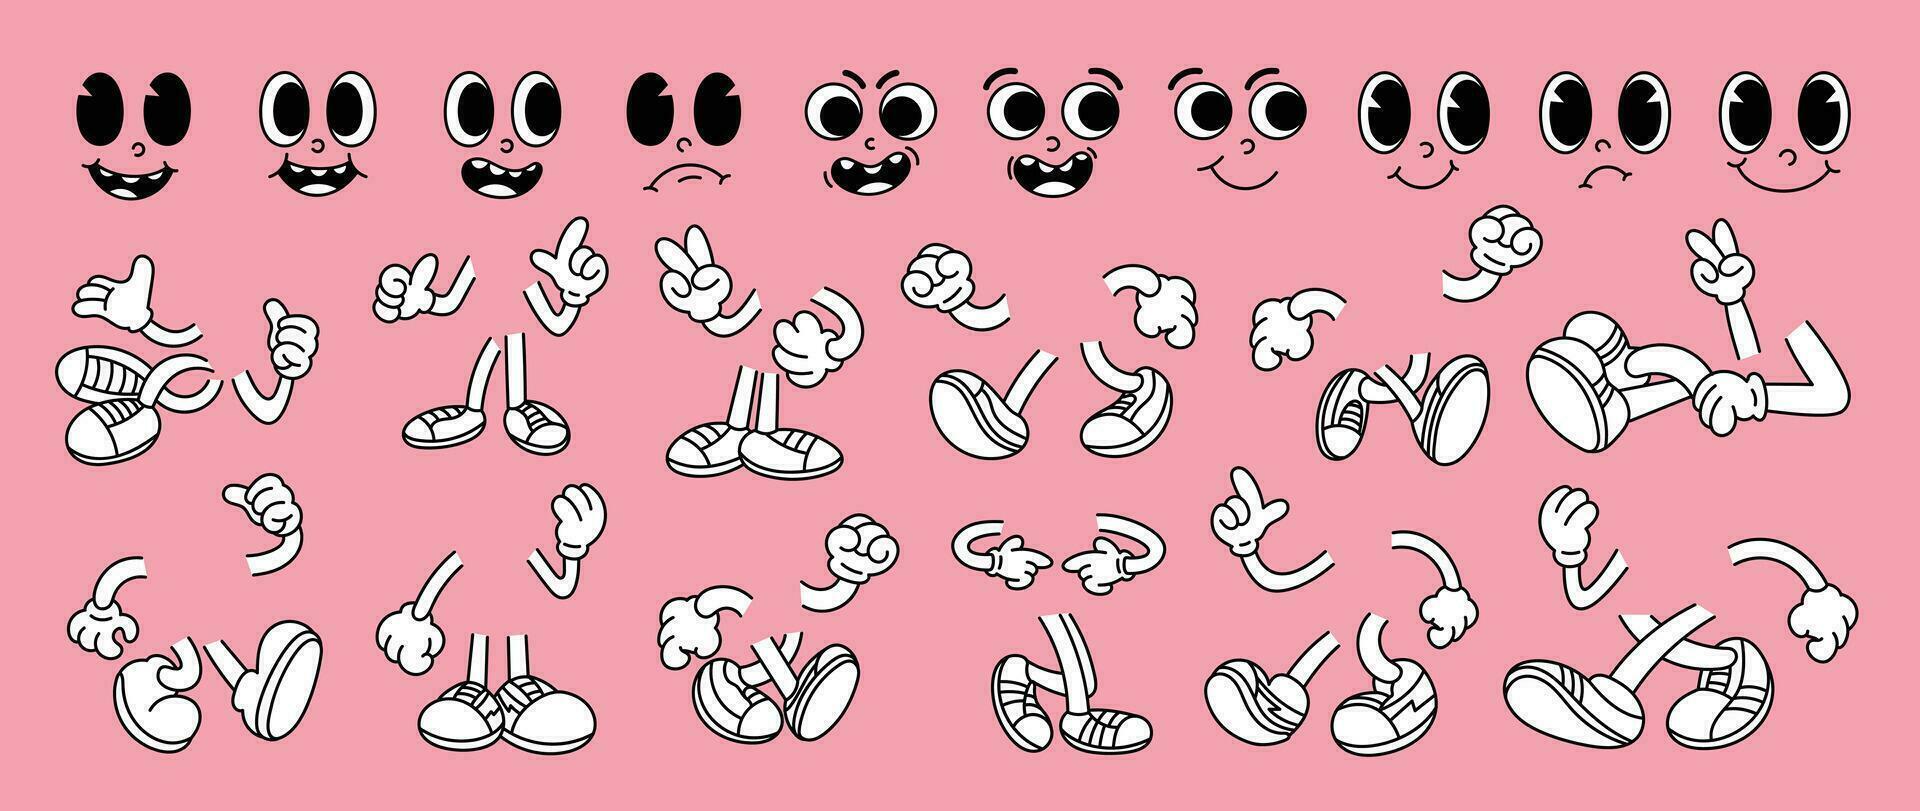 reeks van jaren 70 groovy grappig gezichten vector. verzameling van tekenfilm karakter gezichten, been, hand- in verschillend emoties Vrolijk, boos, verdrietig, vrolijk. schattig retro groovy hippie illustratie voor decoratief, sticker. vector